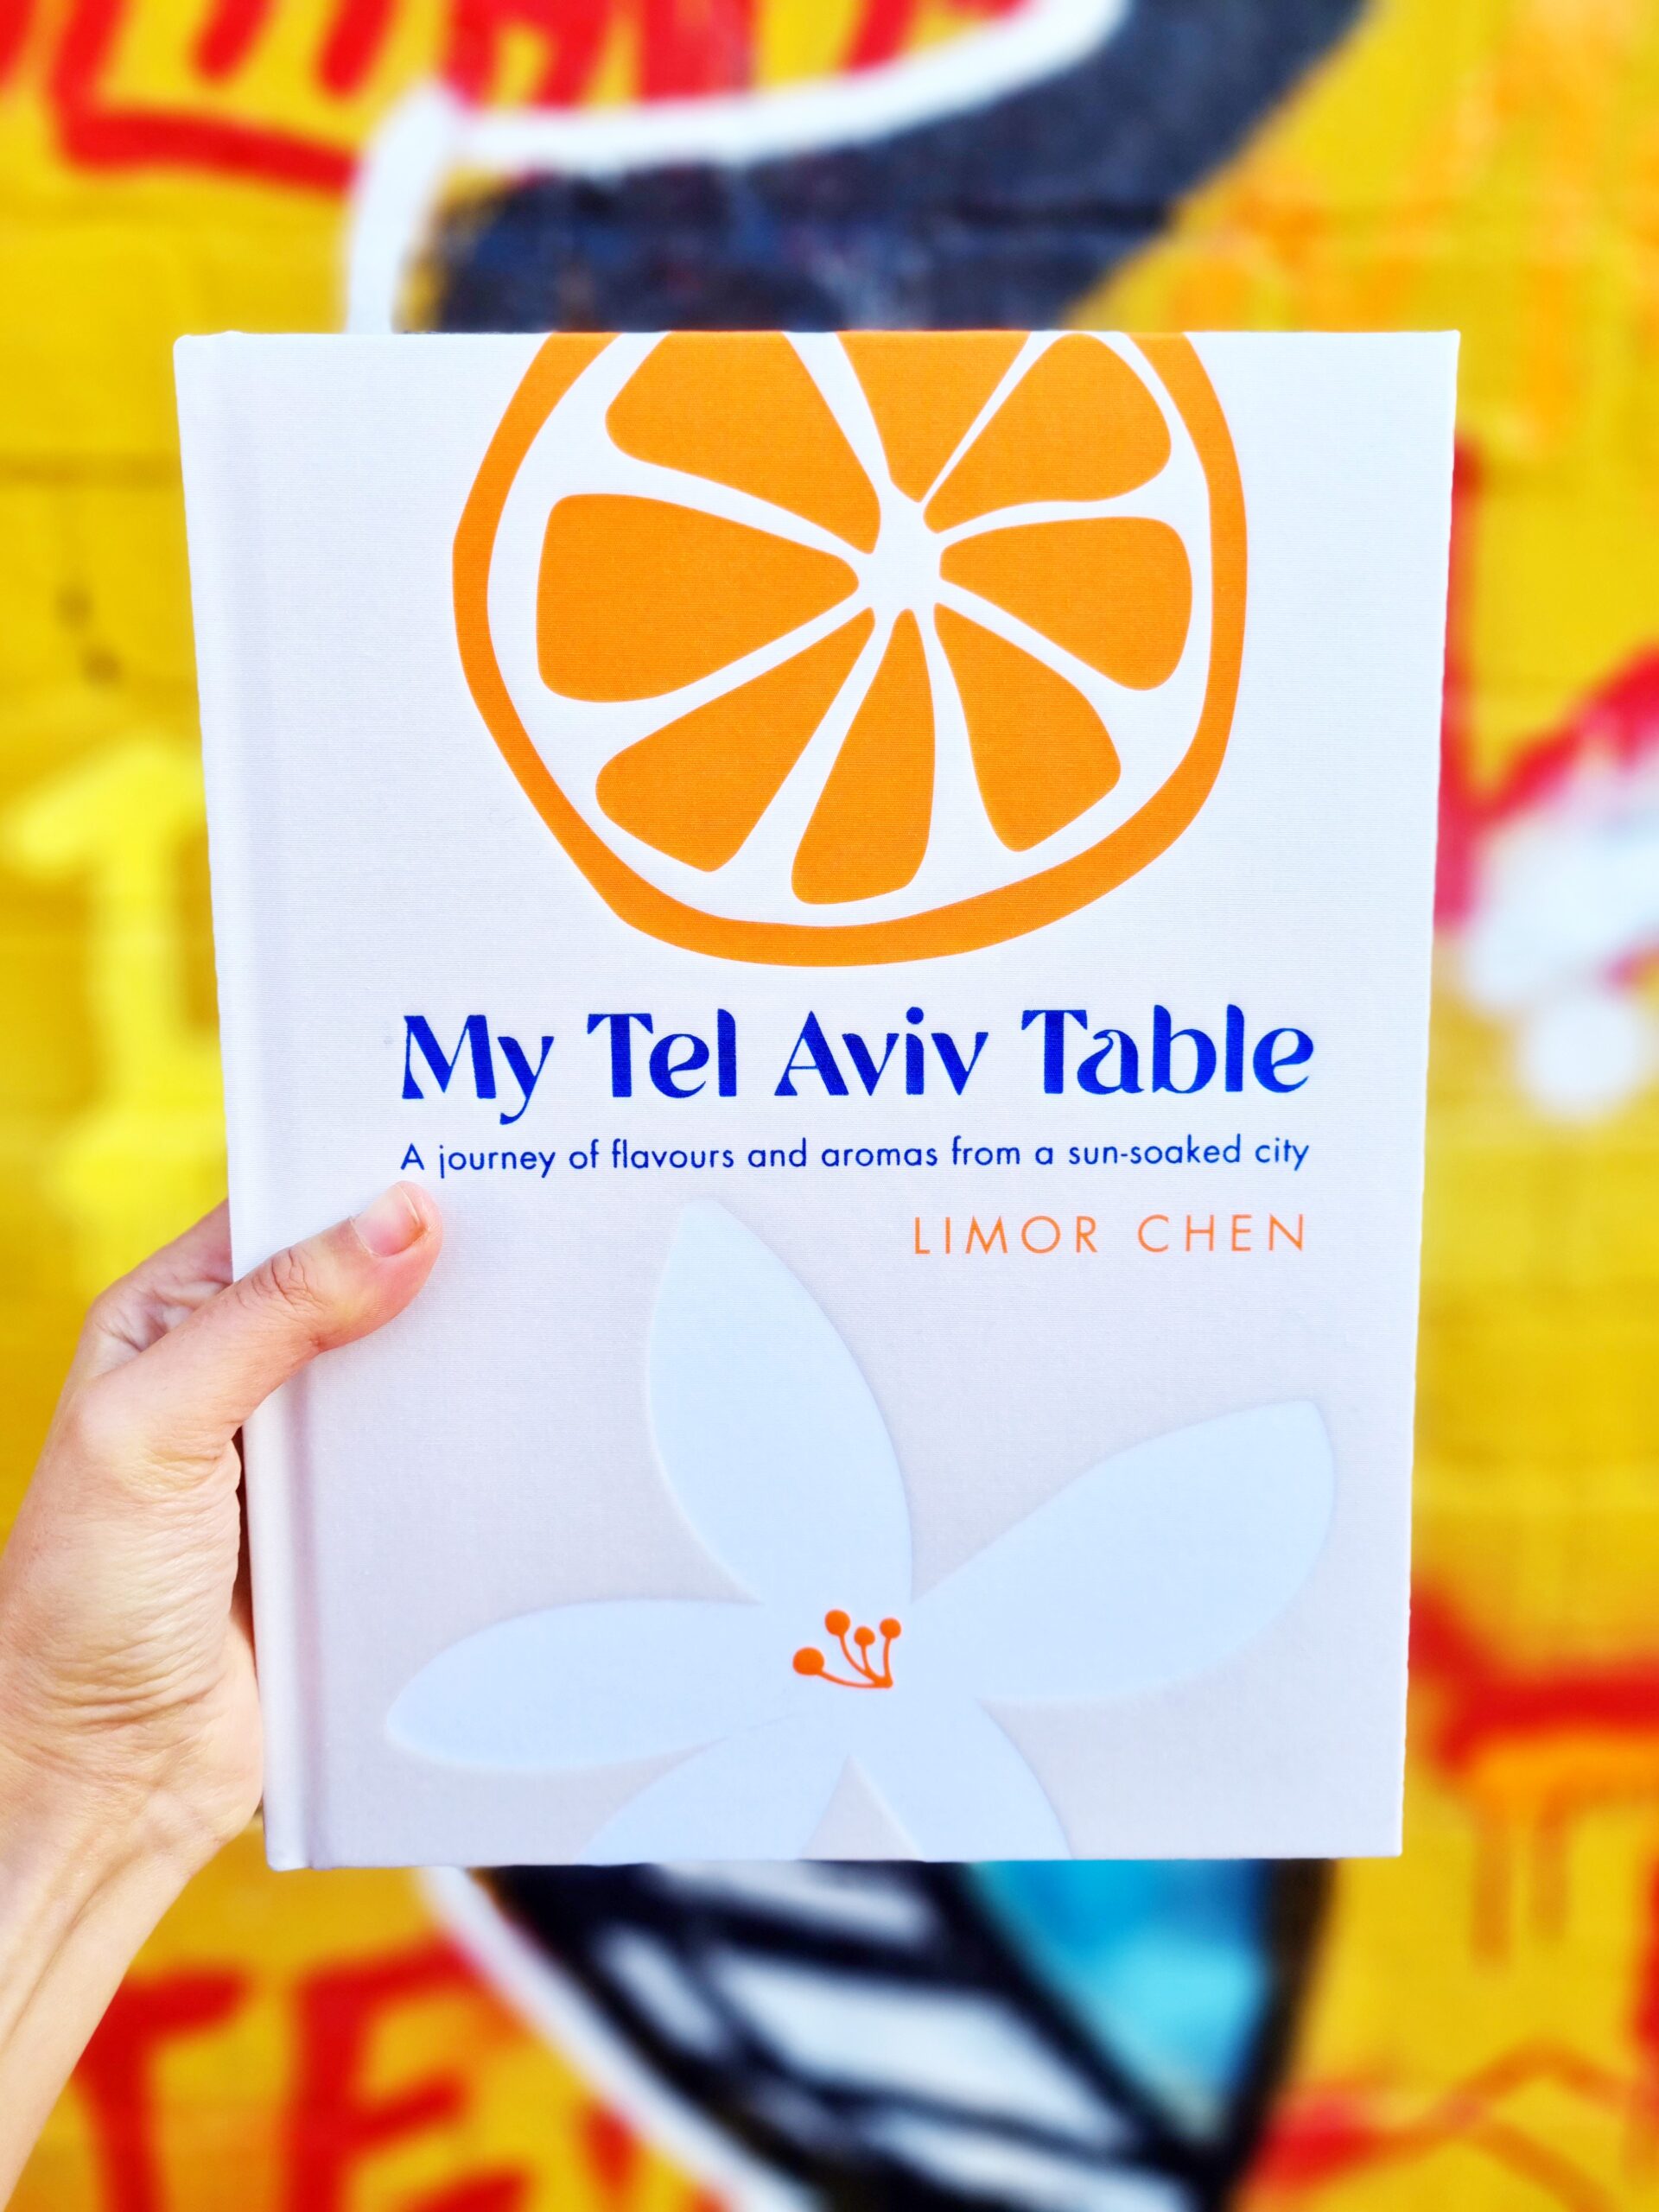 <img src="tel.jpg" alt="tel aviv table cookbook"/>